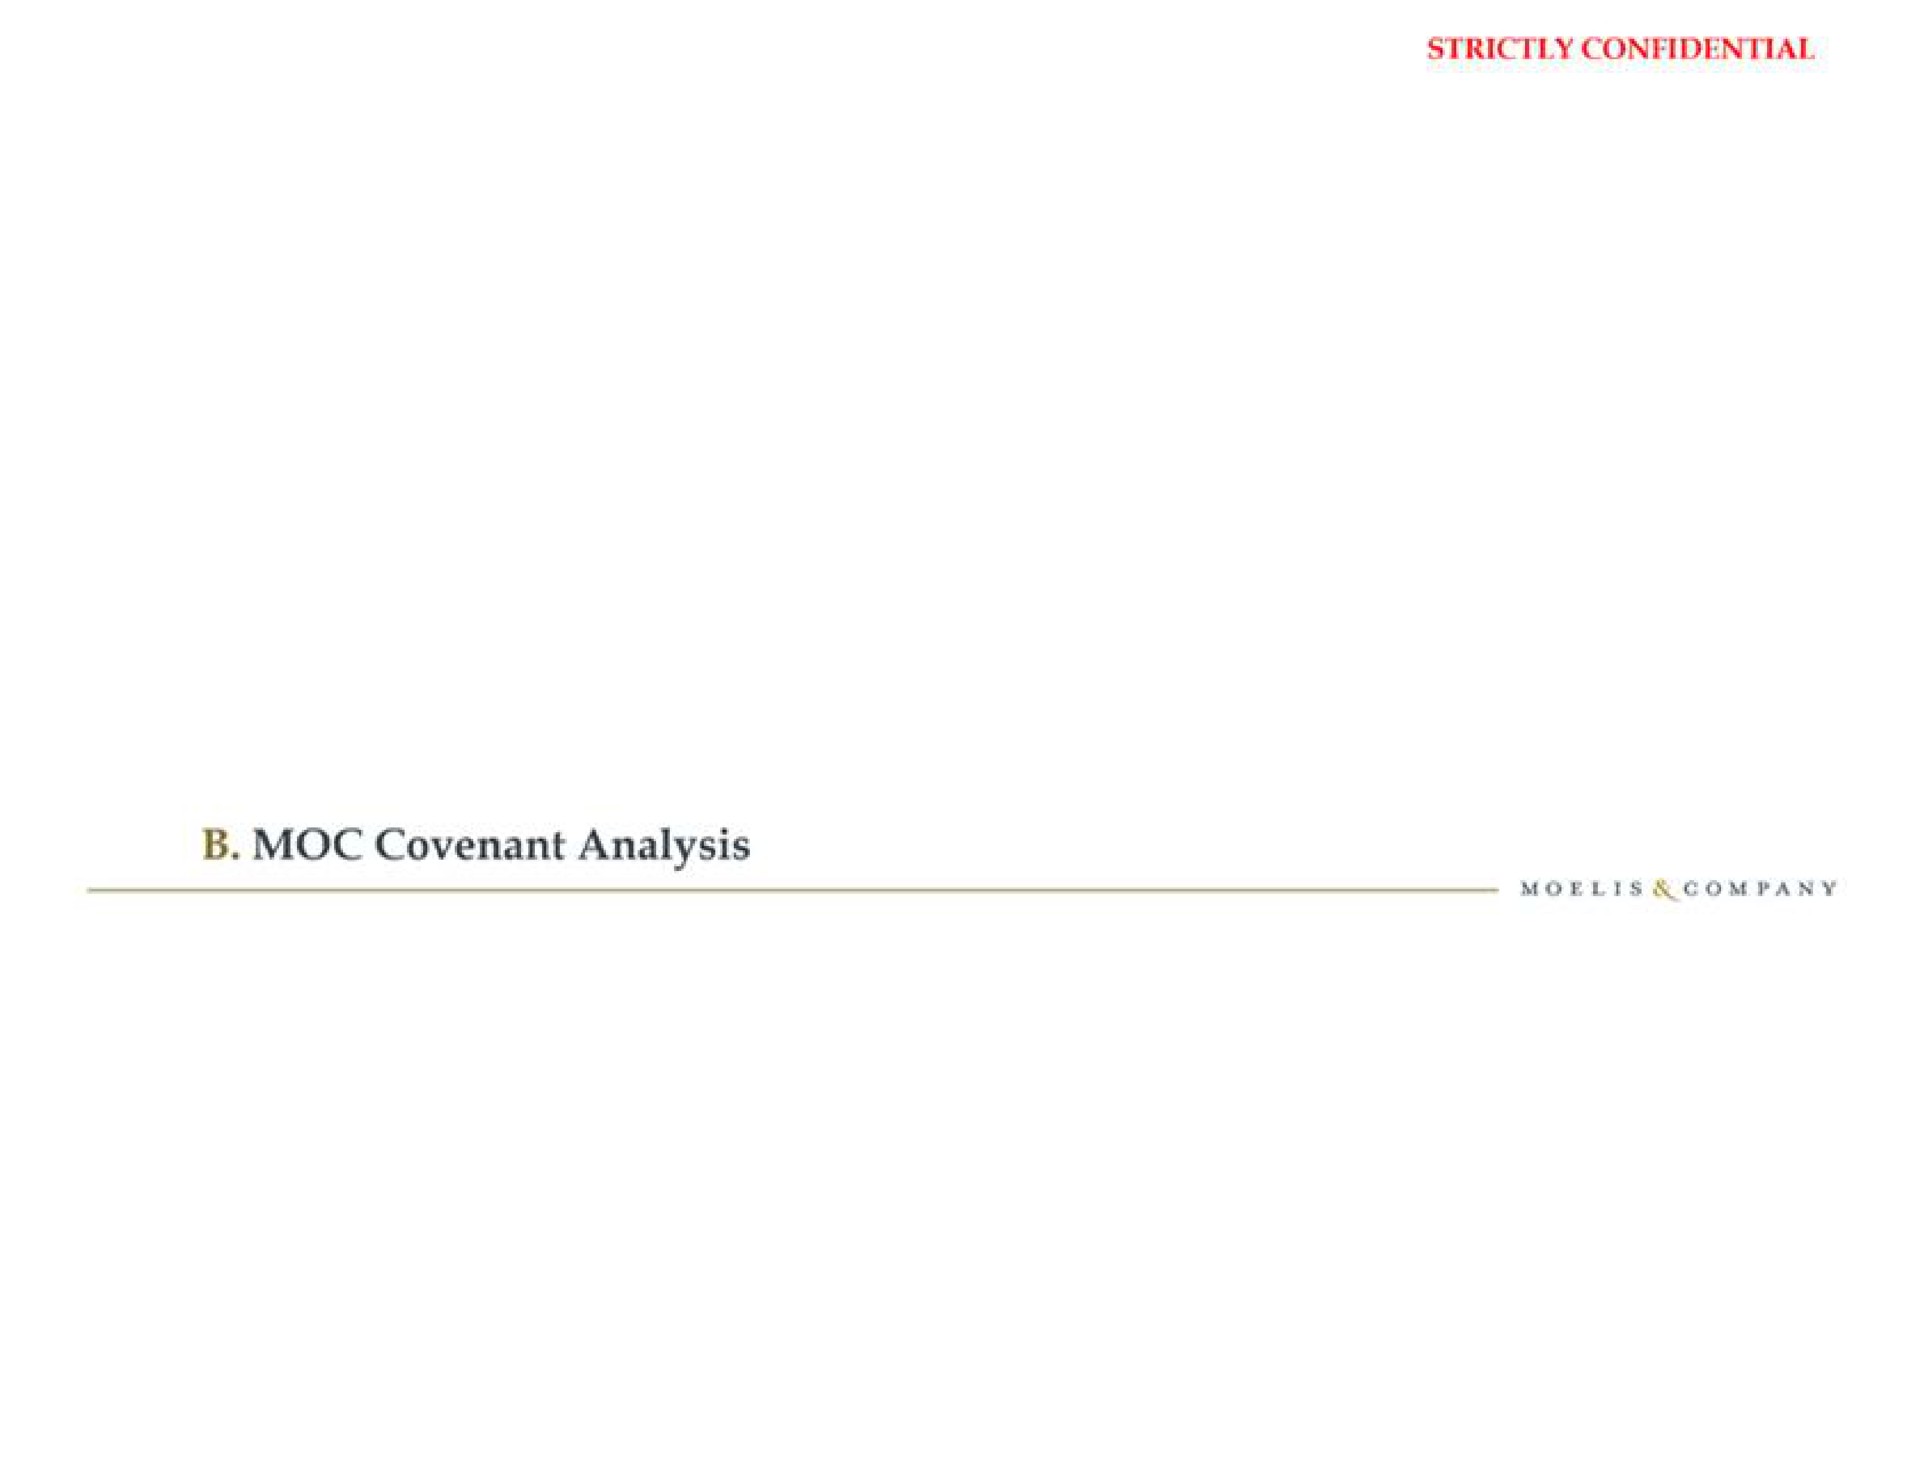 covenant analysis | Moelis & Company